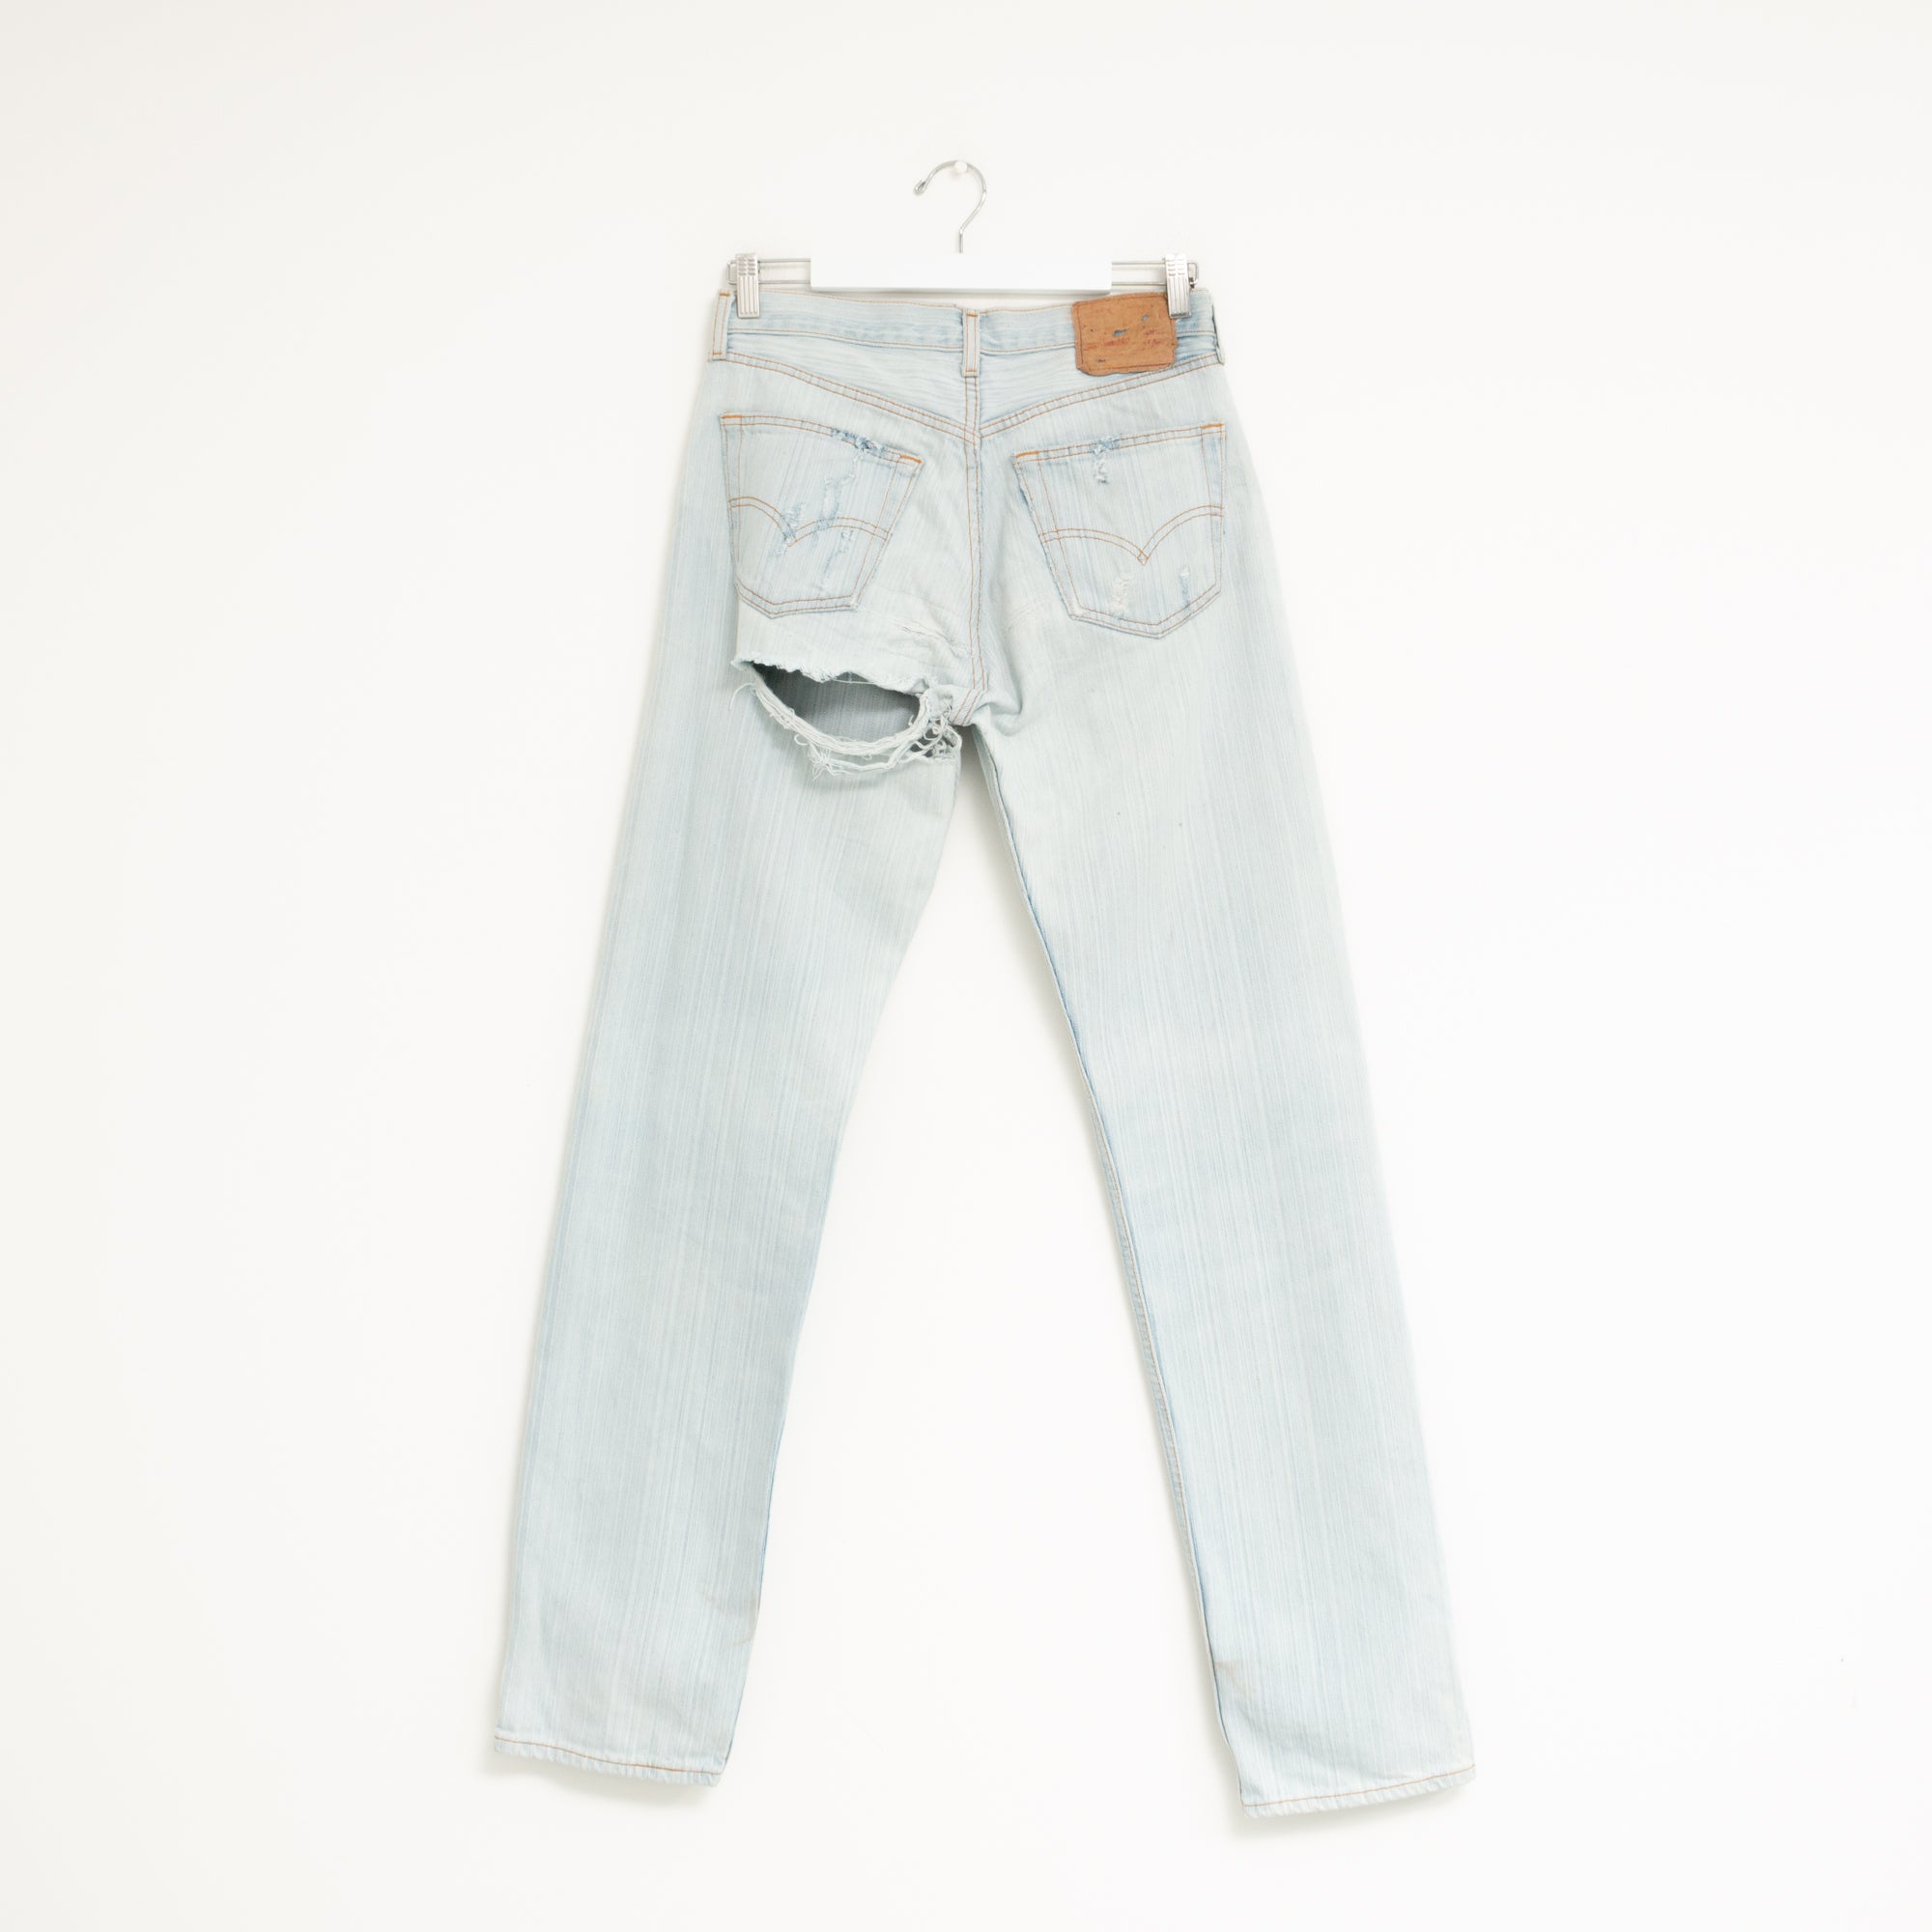 "DISTRESSED" Jeans W31 L35